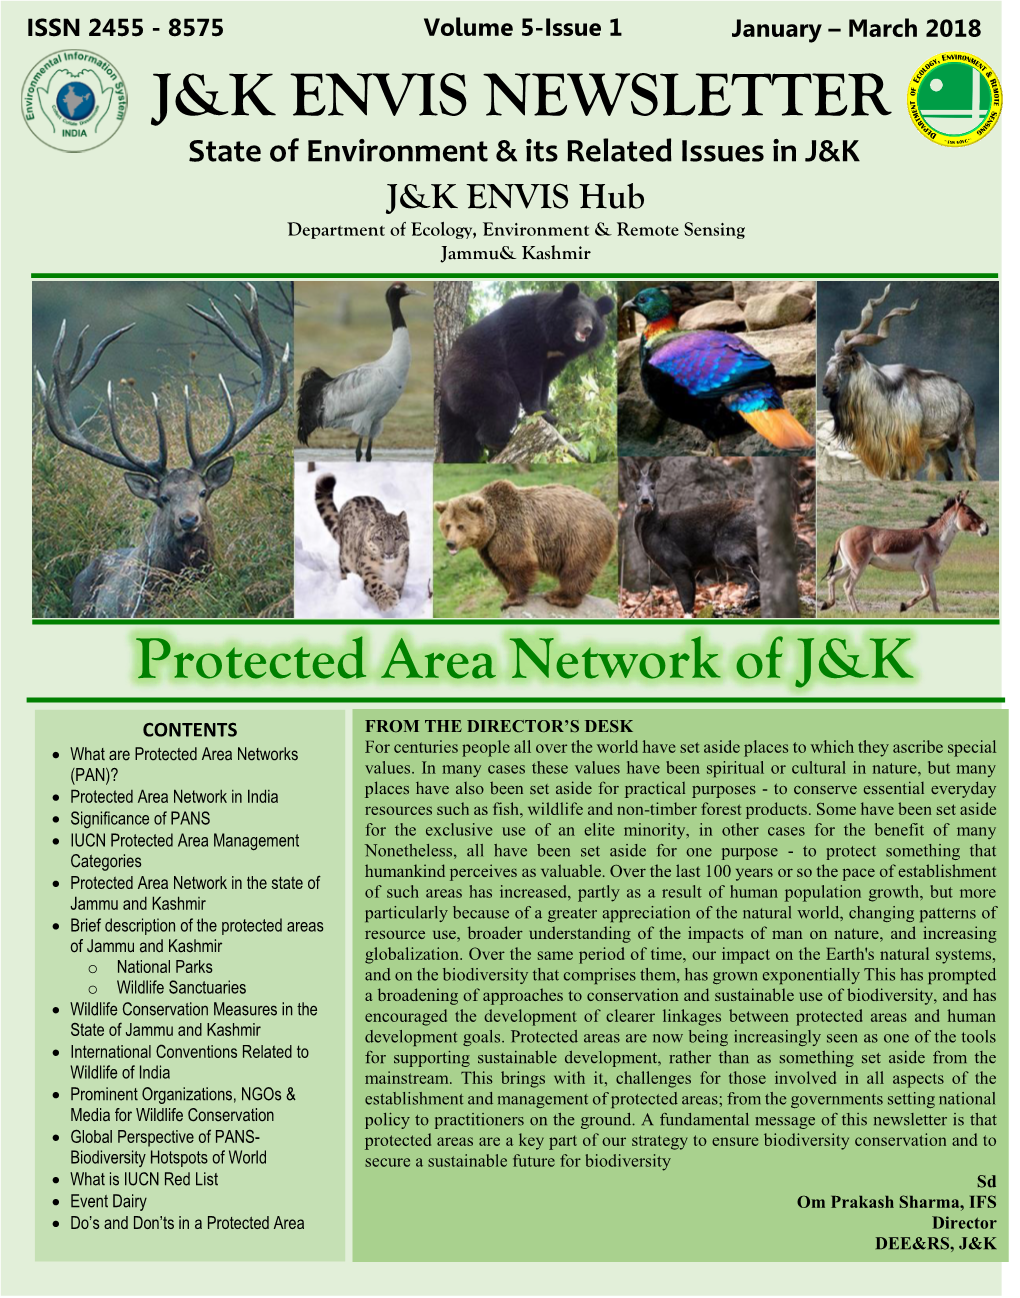 J&K Envis Newsletter